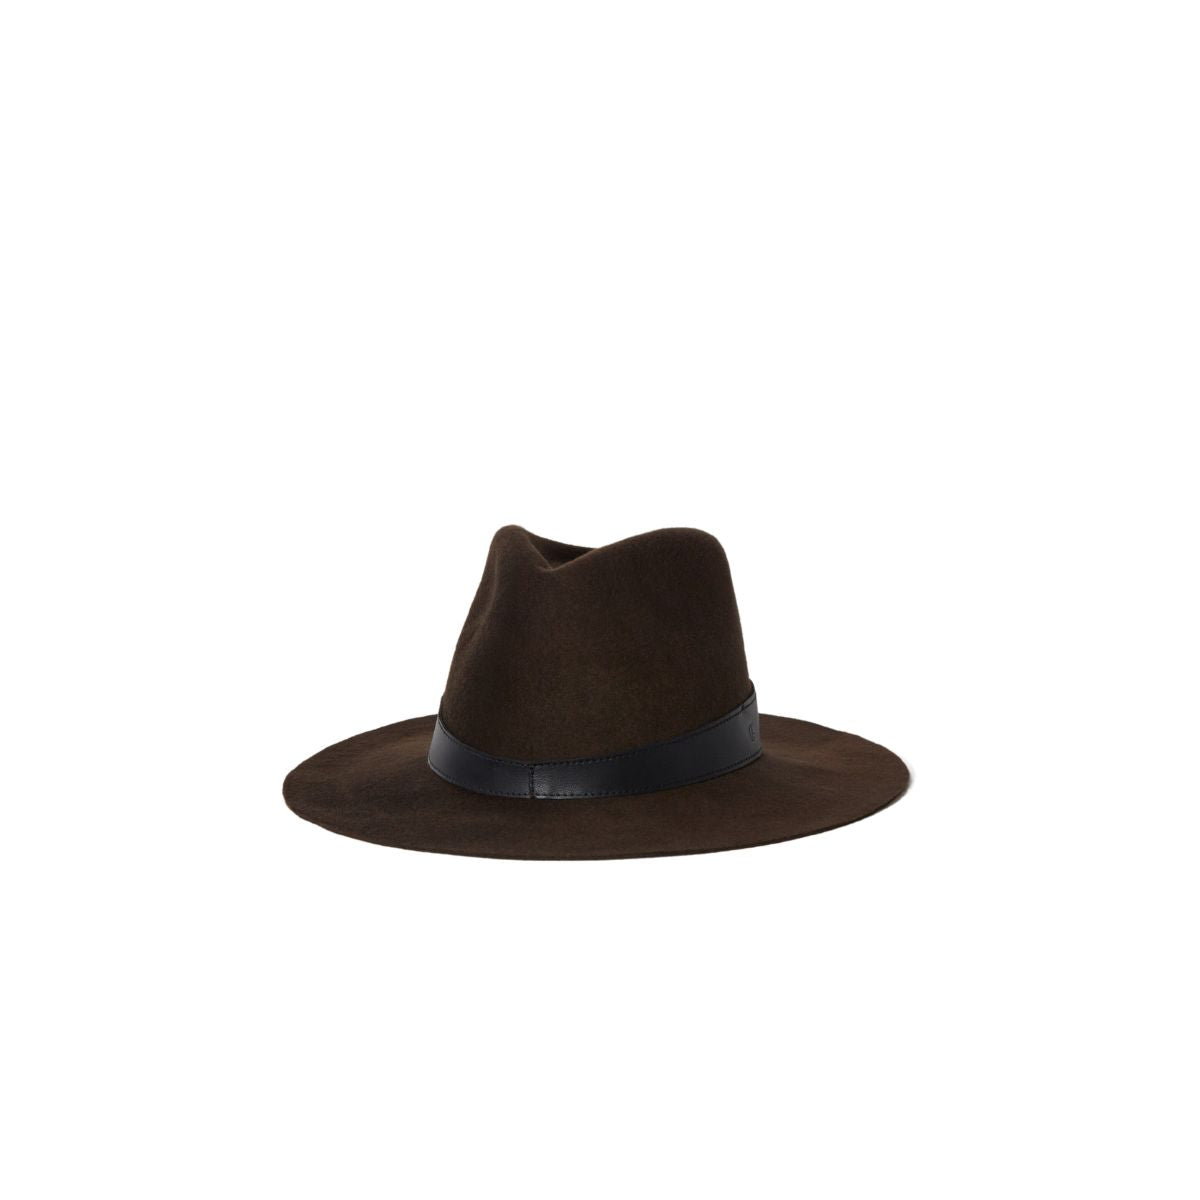 Janessa Leone Raleigh Hat in Dark Brown